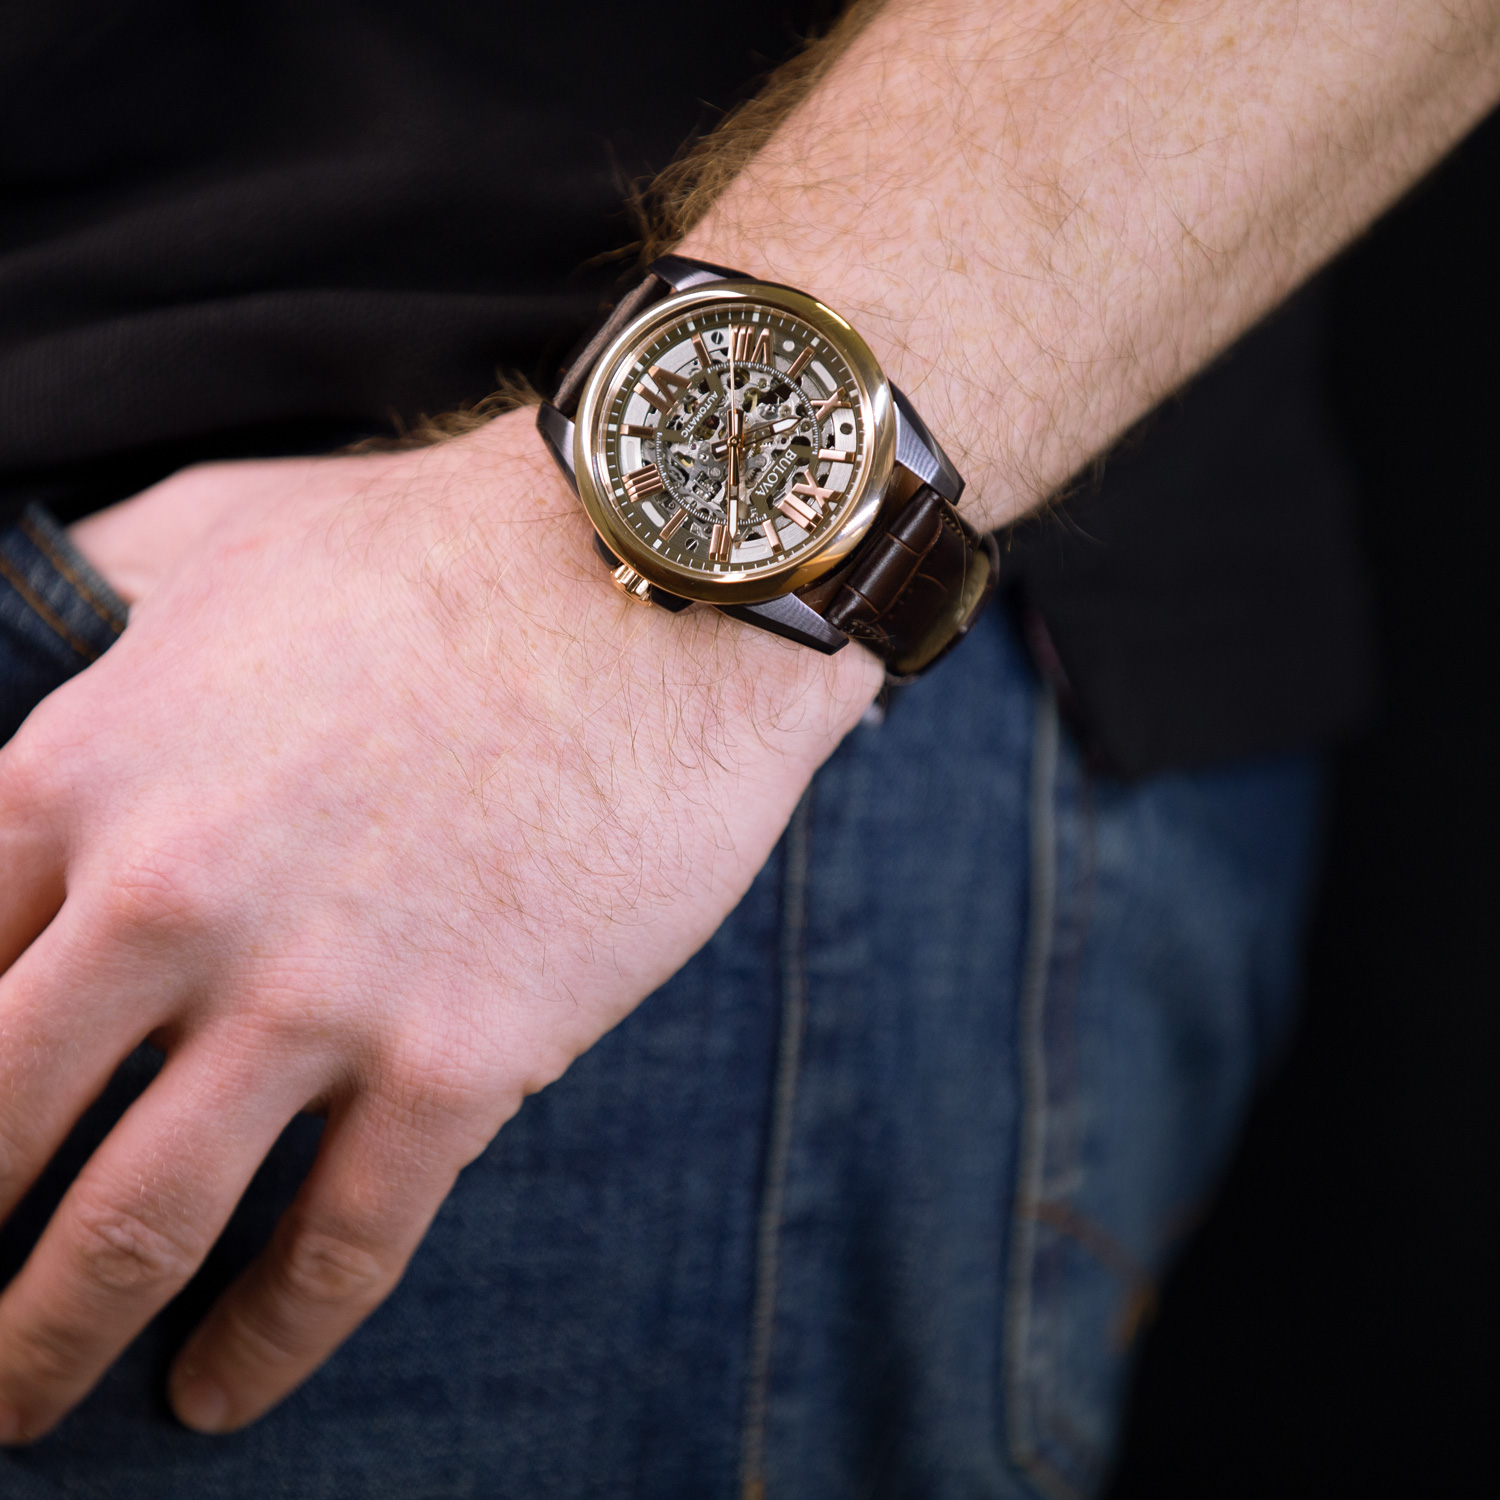 Наручные часы мужские Bulova 98A165 коричневые